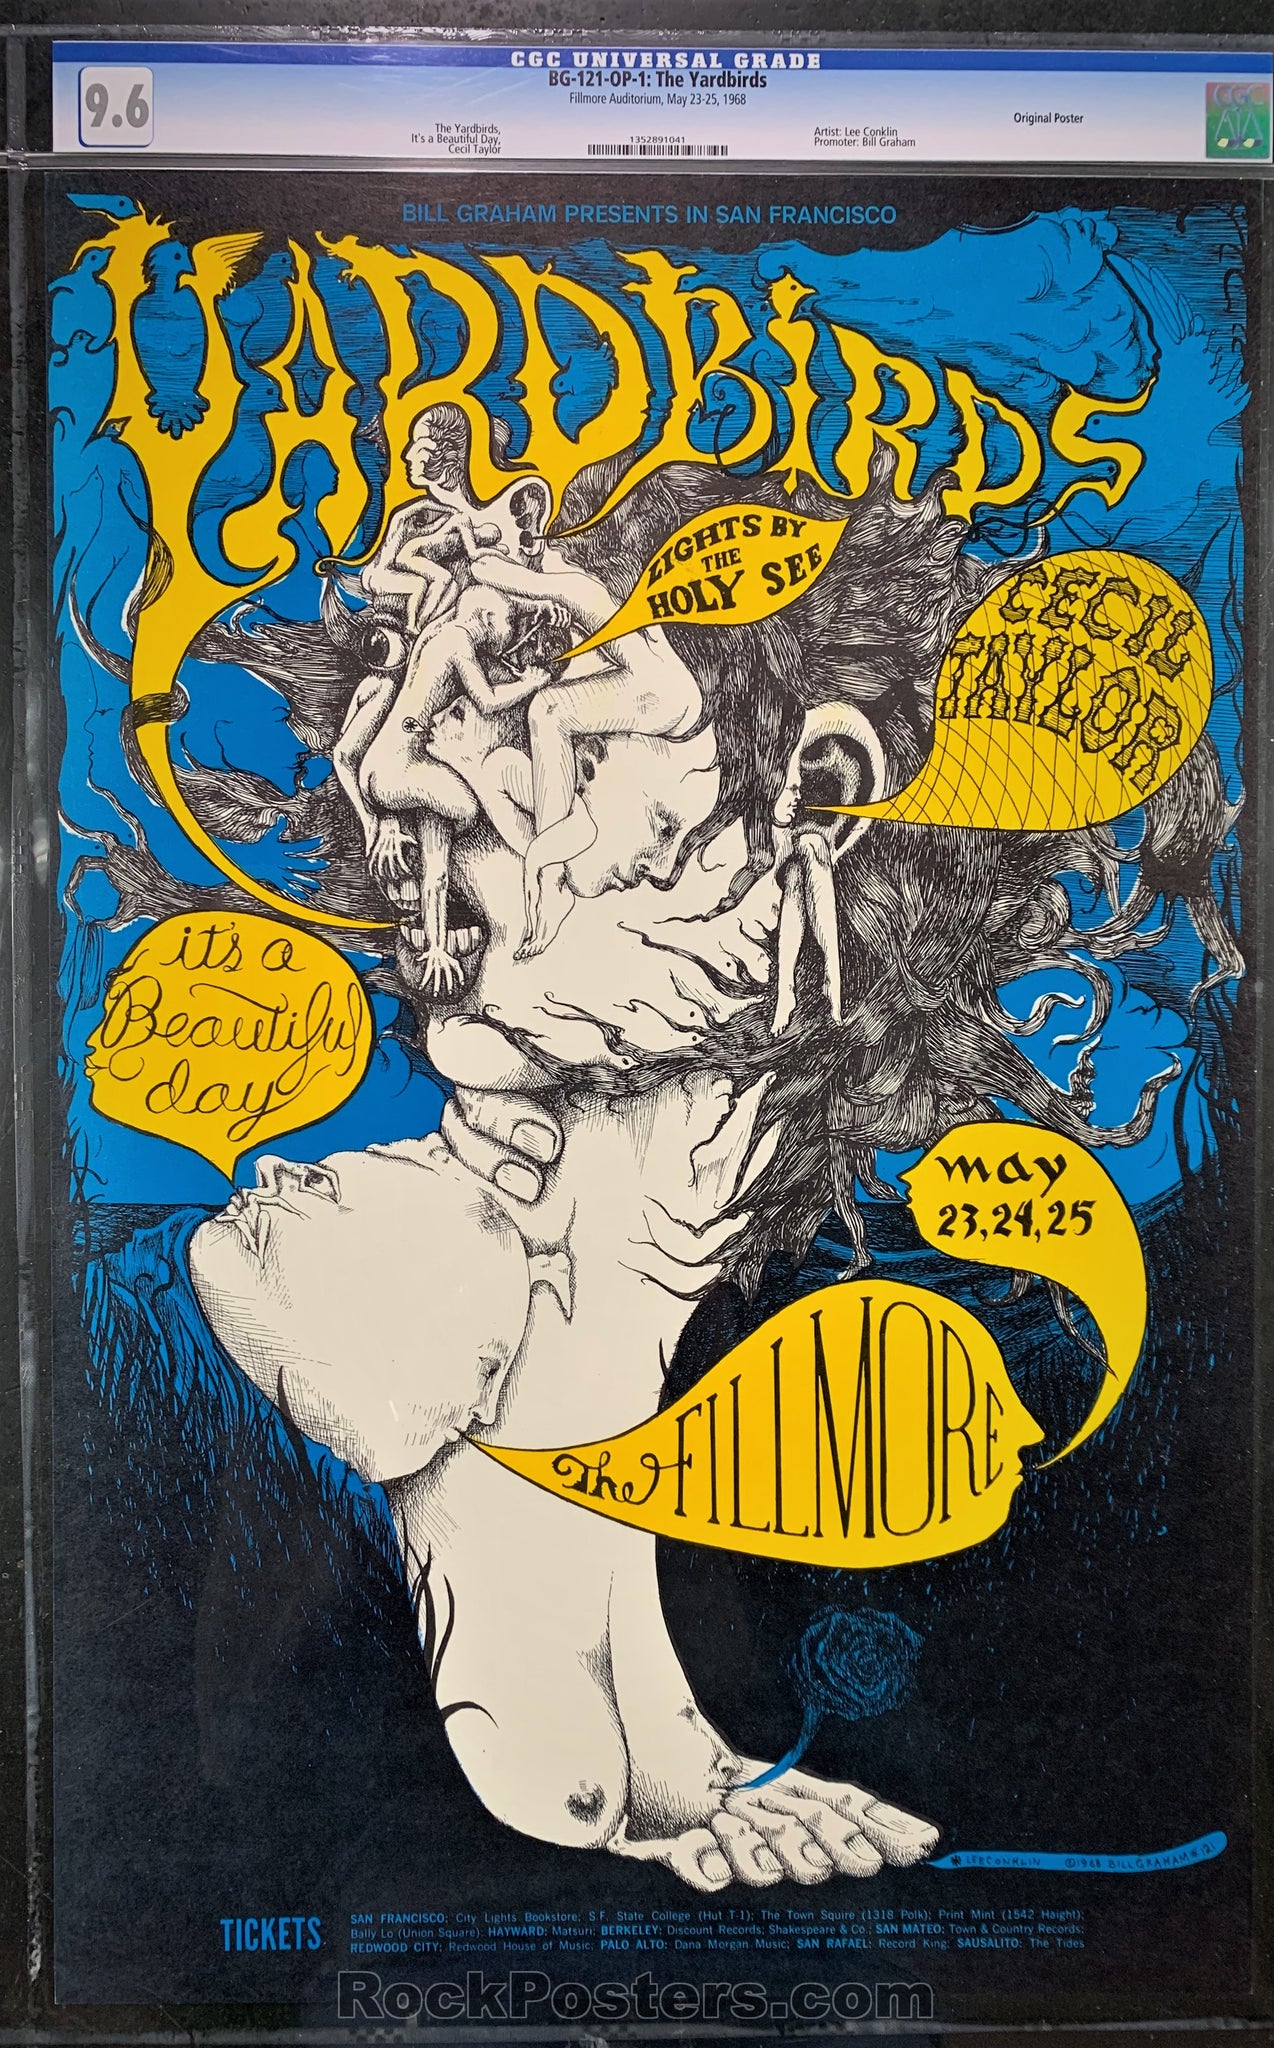 AUCTION - BG-121 - Yardbirds Poster - Fillmore Auditorium - CGC Graded  9.6